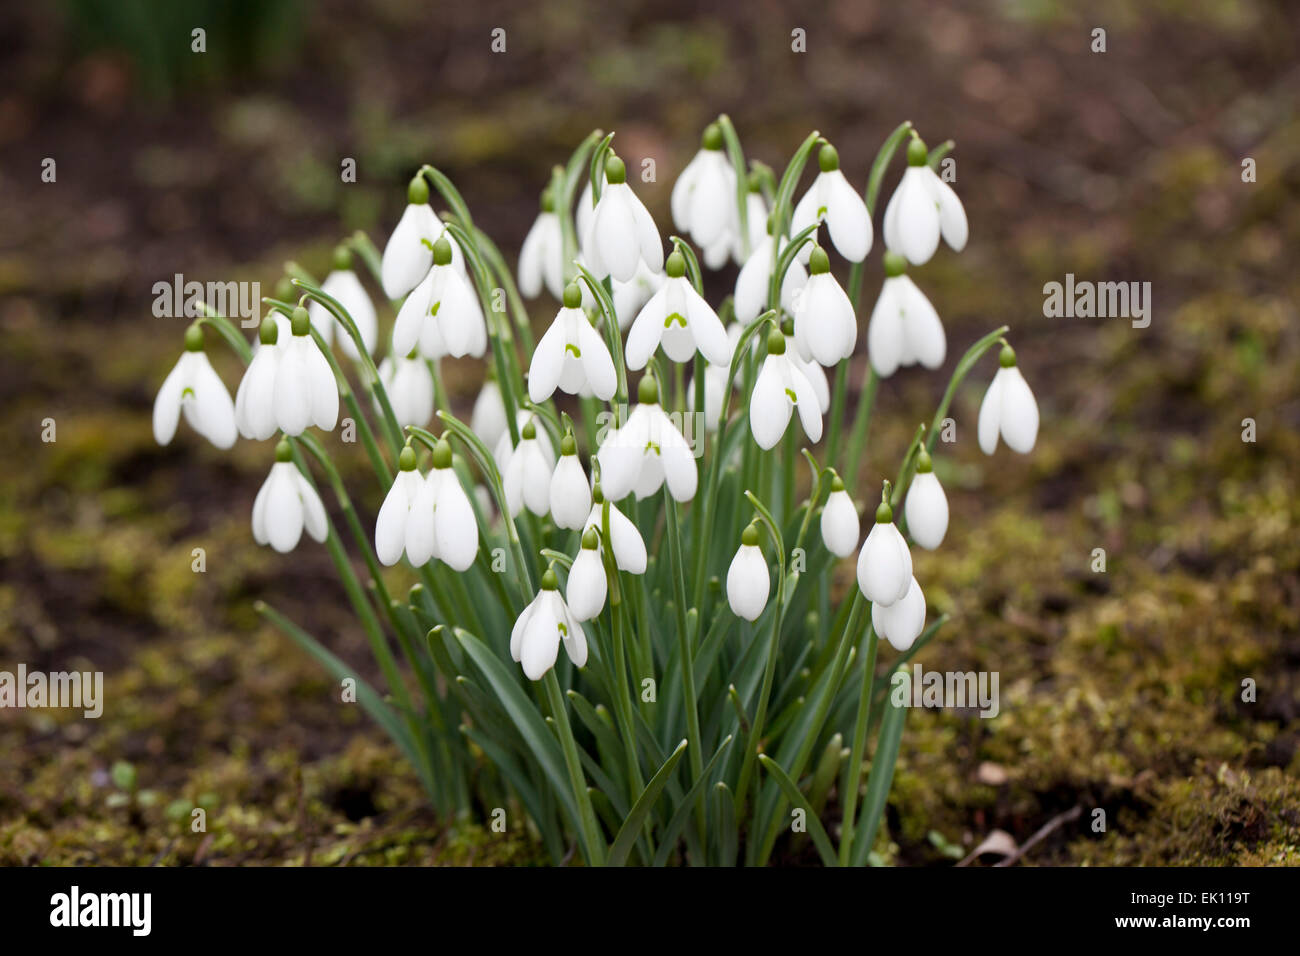 Galanthus S. Arnott Snowdrops fioritura in un giardino d'inverno inglese, Regno Unito Foto Stock